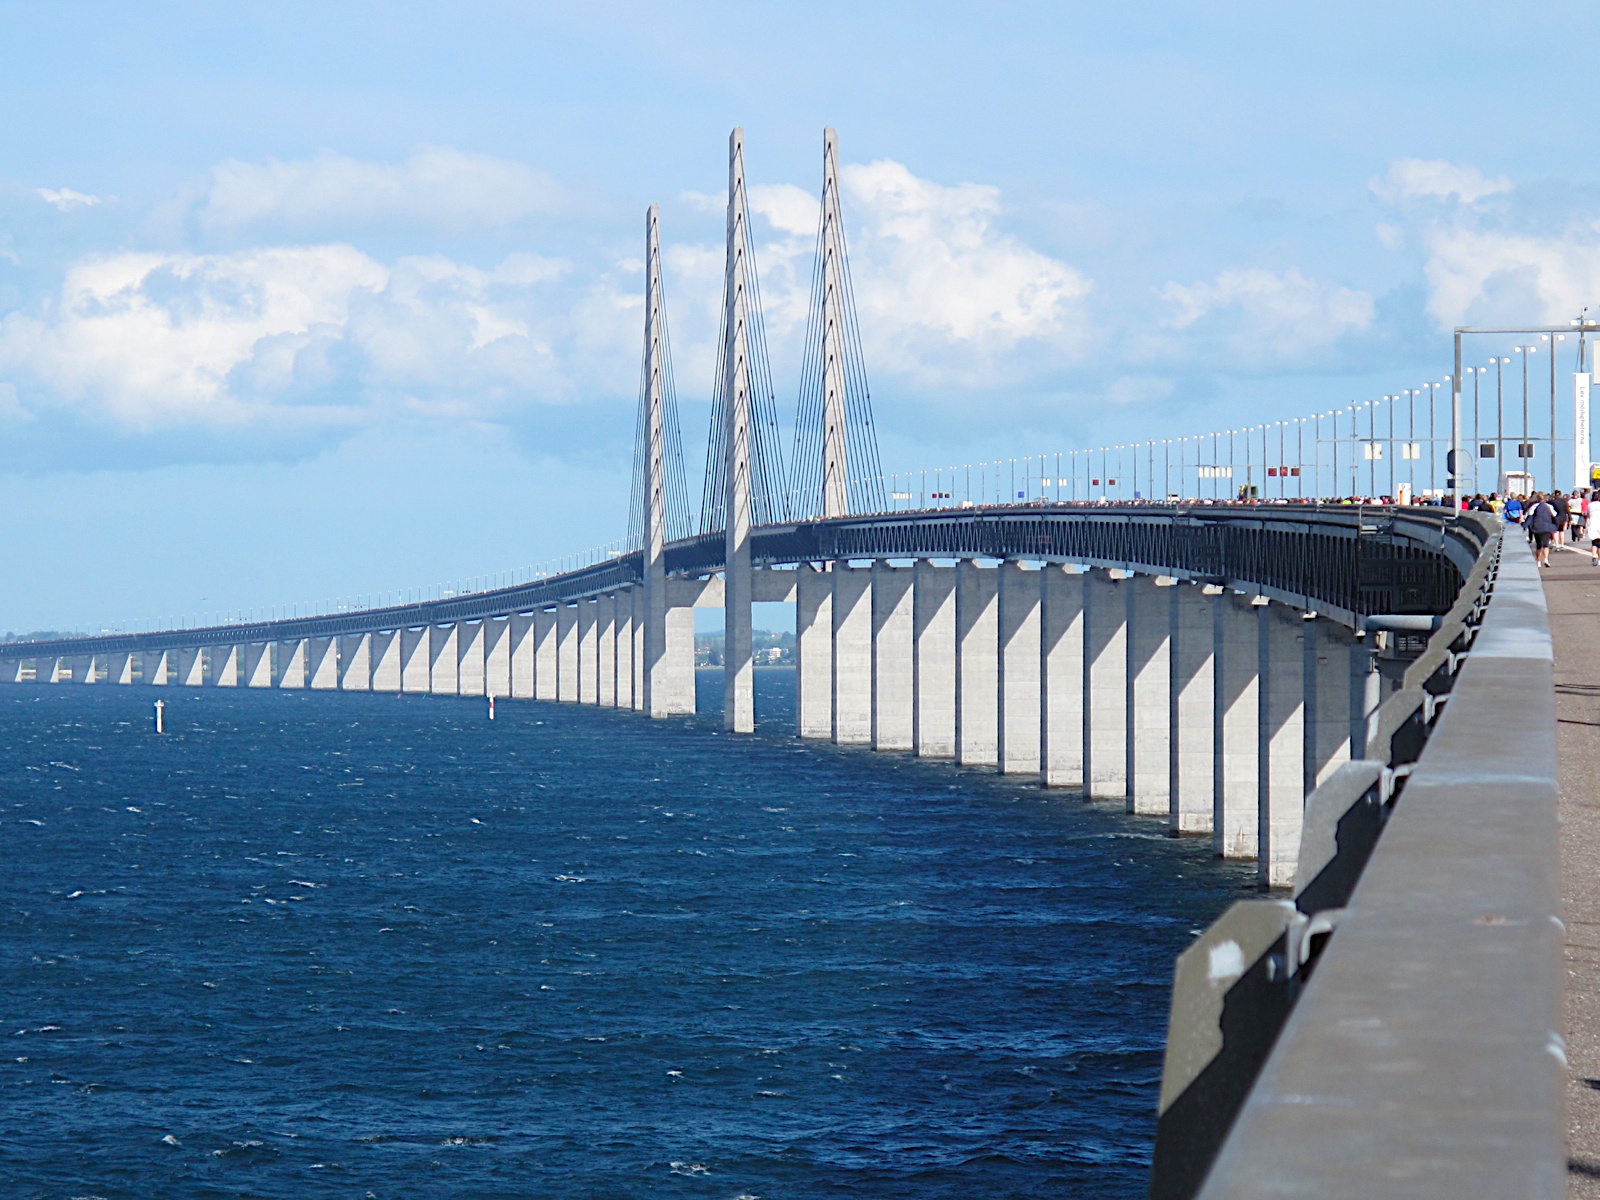 В день проведения полумарафонского забега мост превращается в пешеходную зону. Источник https://upload.wikimedia.org/